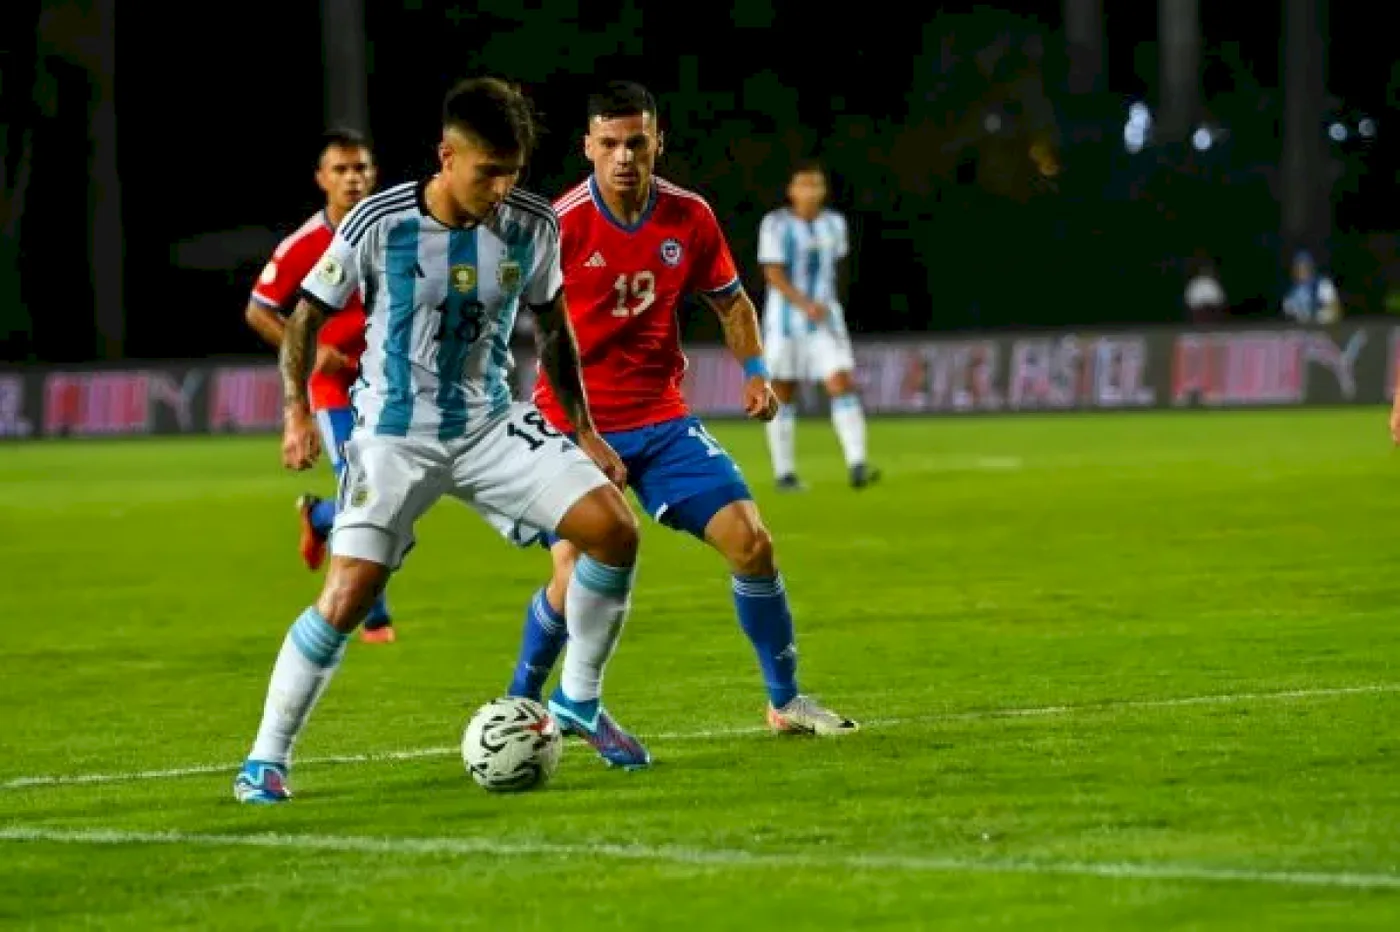 La Albiceleste de Javier Mascherano goleó 5-0 a la Roja y enciende cada vez más la ilusión de meterse en los Juegos Olímpicos.